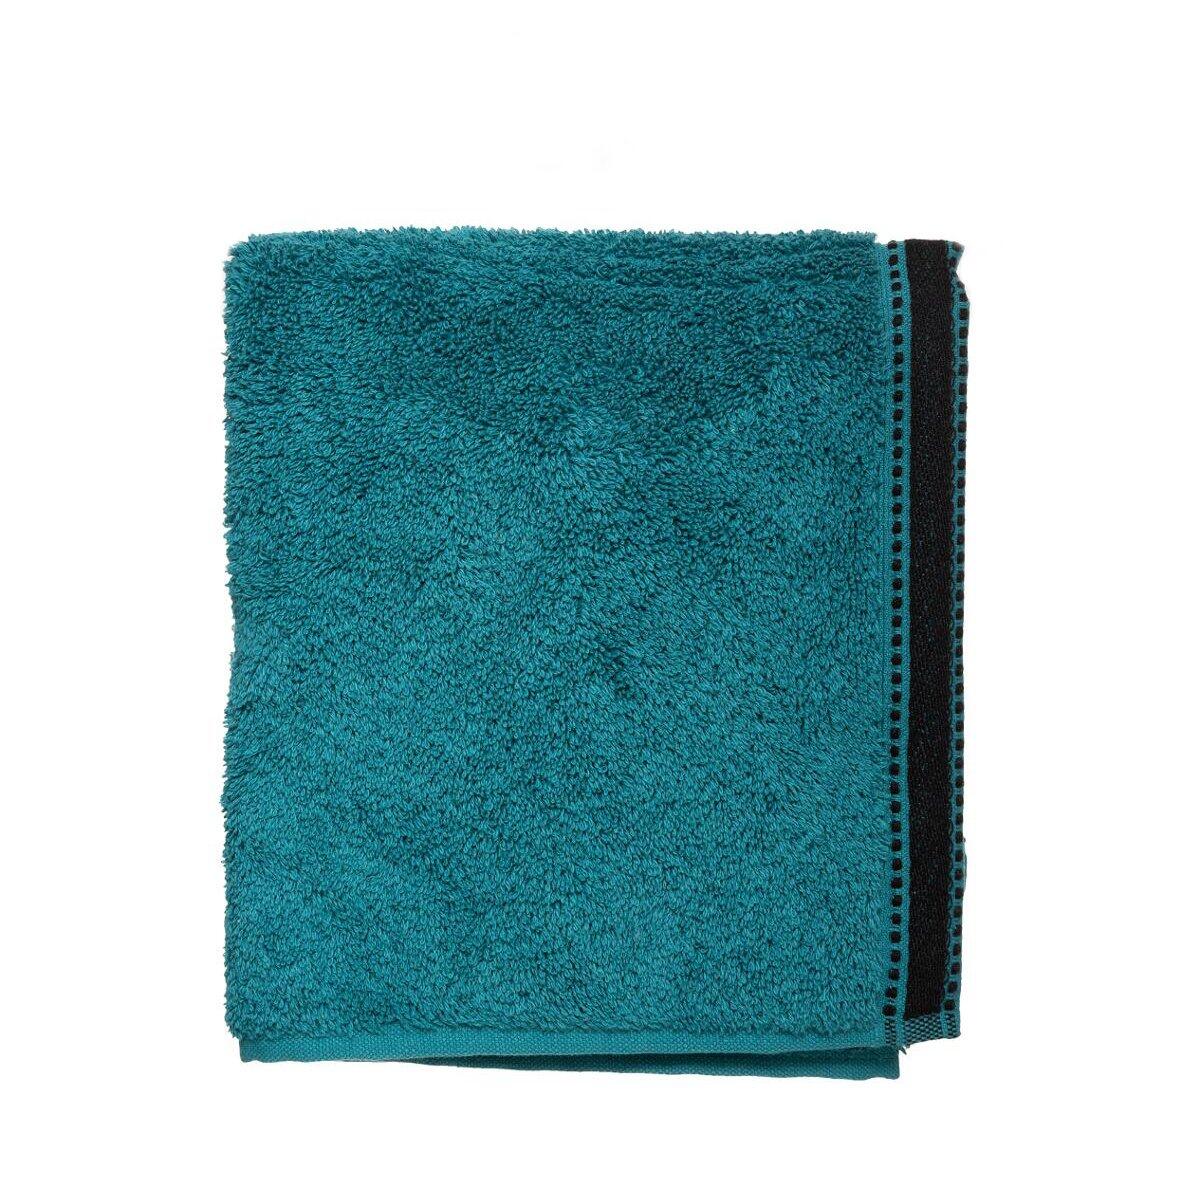 Handdoek (50 x 90 cm) Joia Eendblauw 1